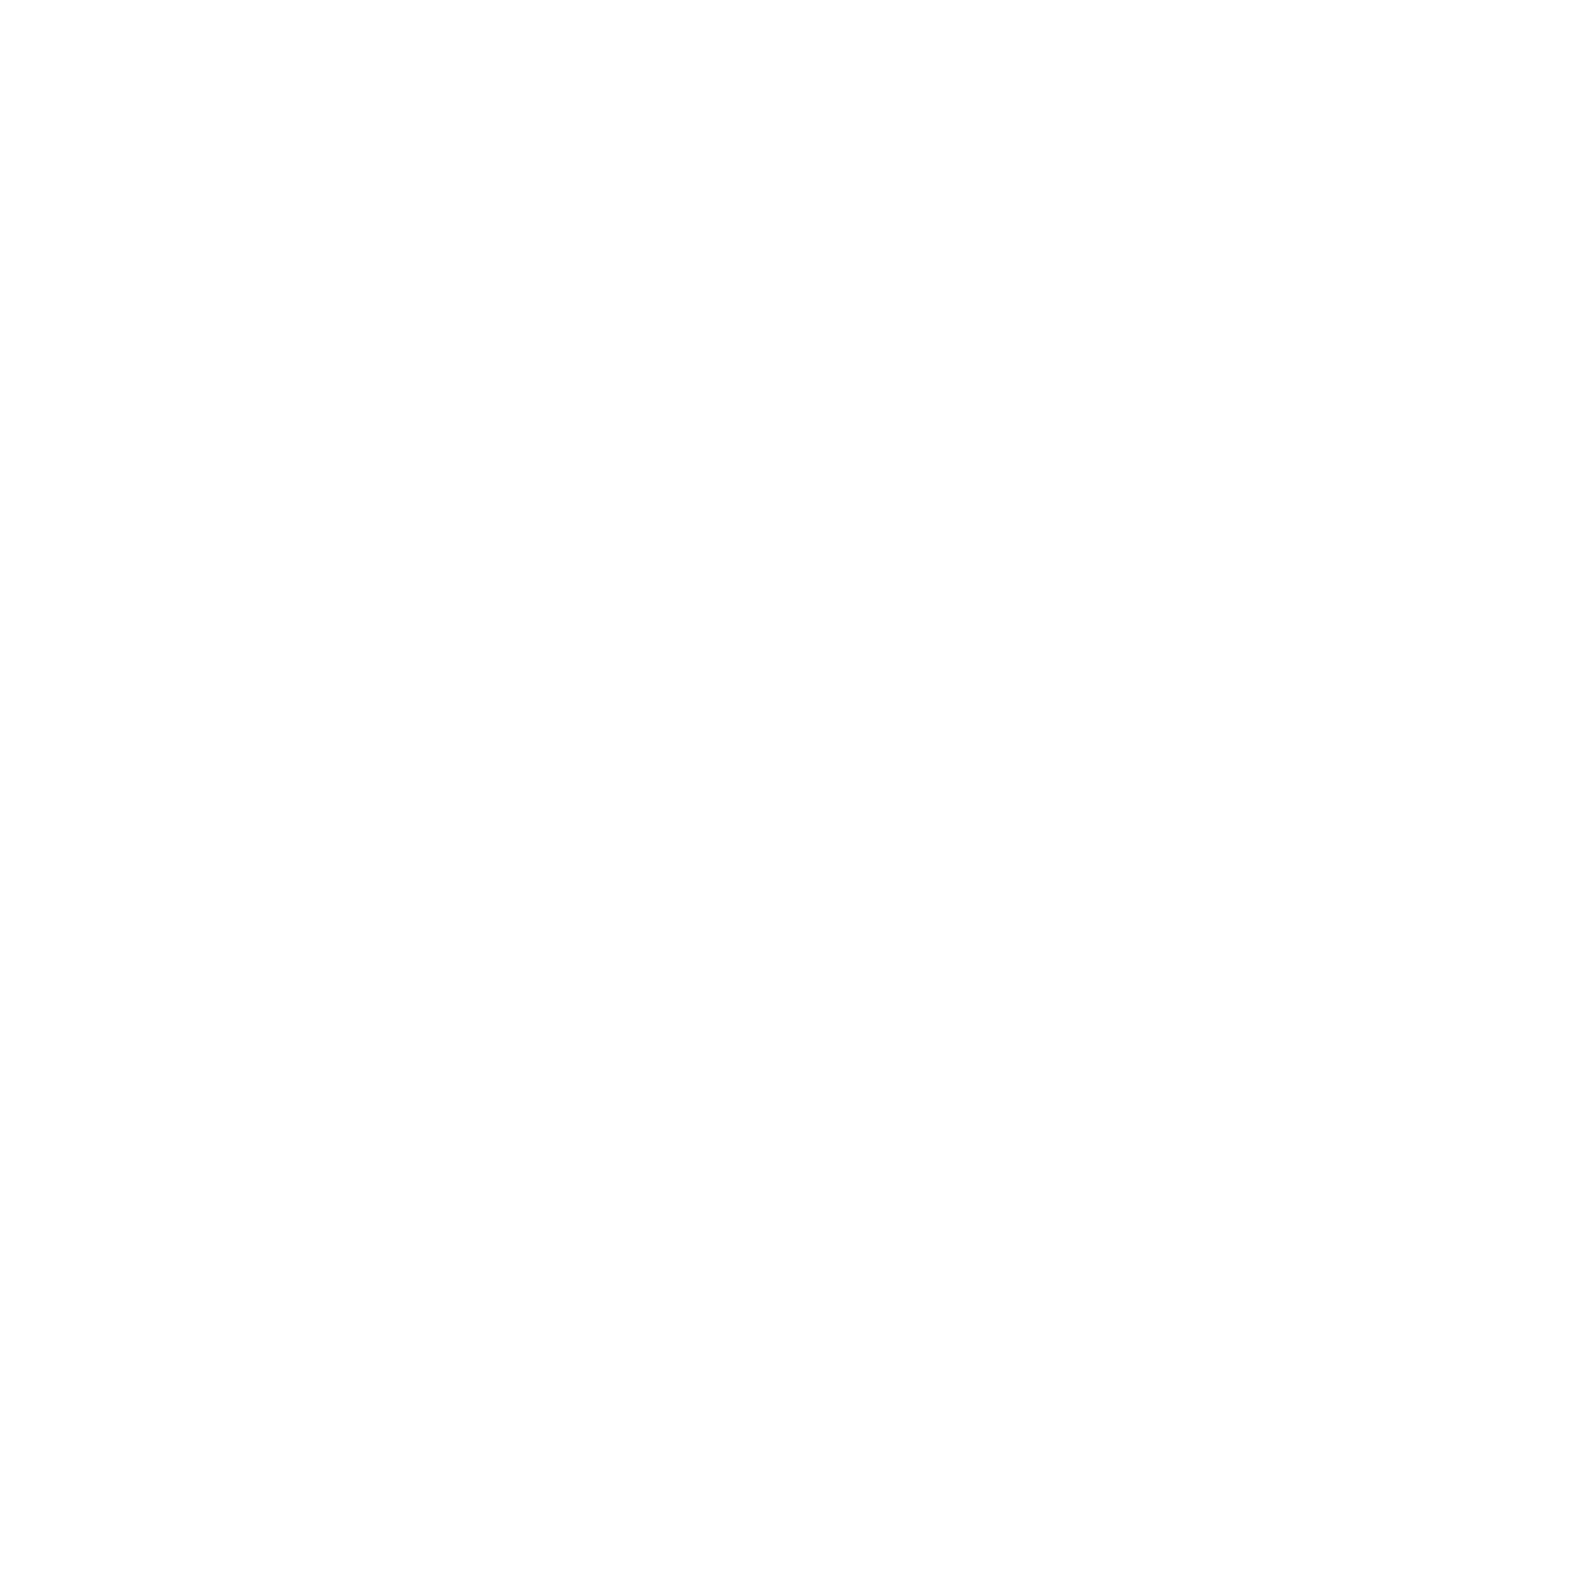 Getlink logo for dark backgrounds (transparent PNG)